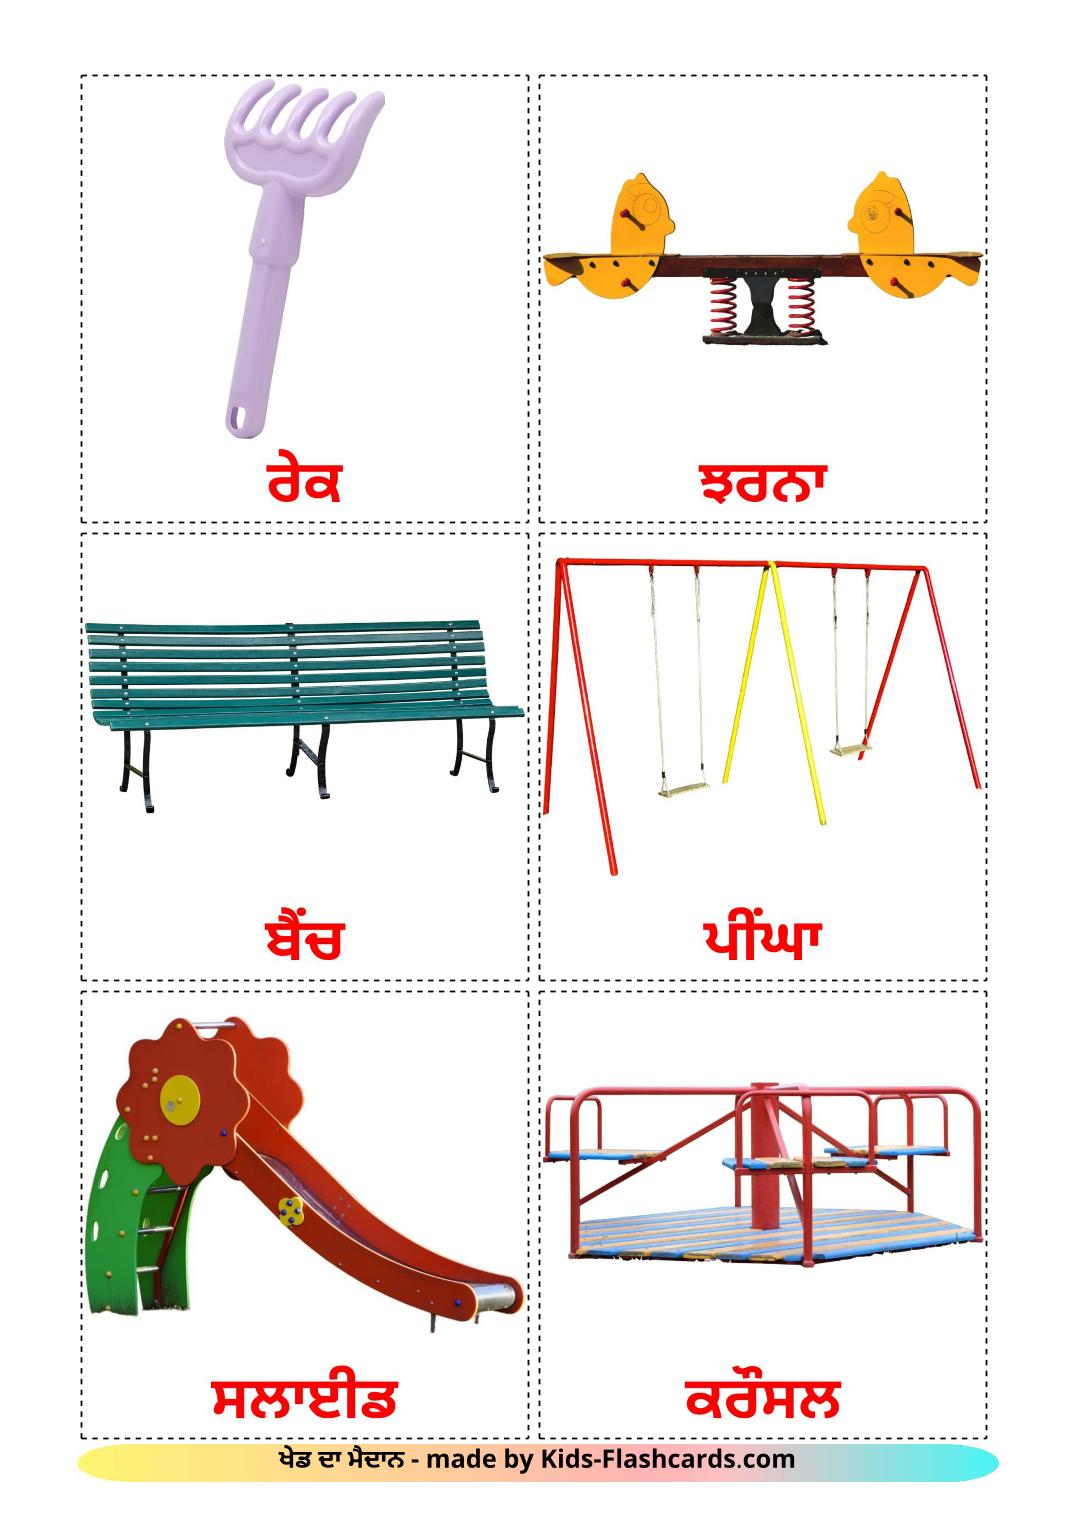 Playground - 13 Free Printable punjabi(Gurmukhi) Flashcards 